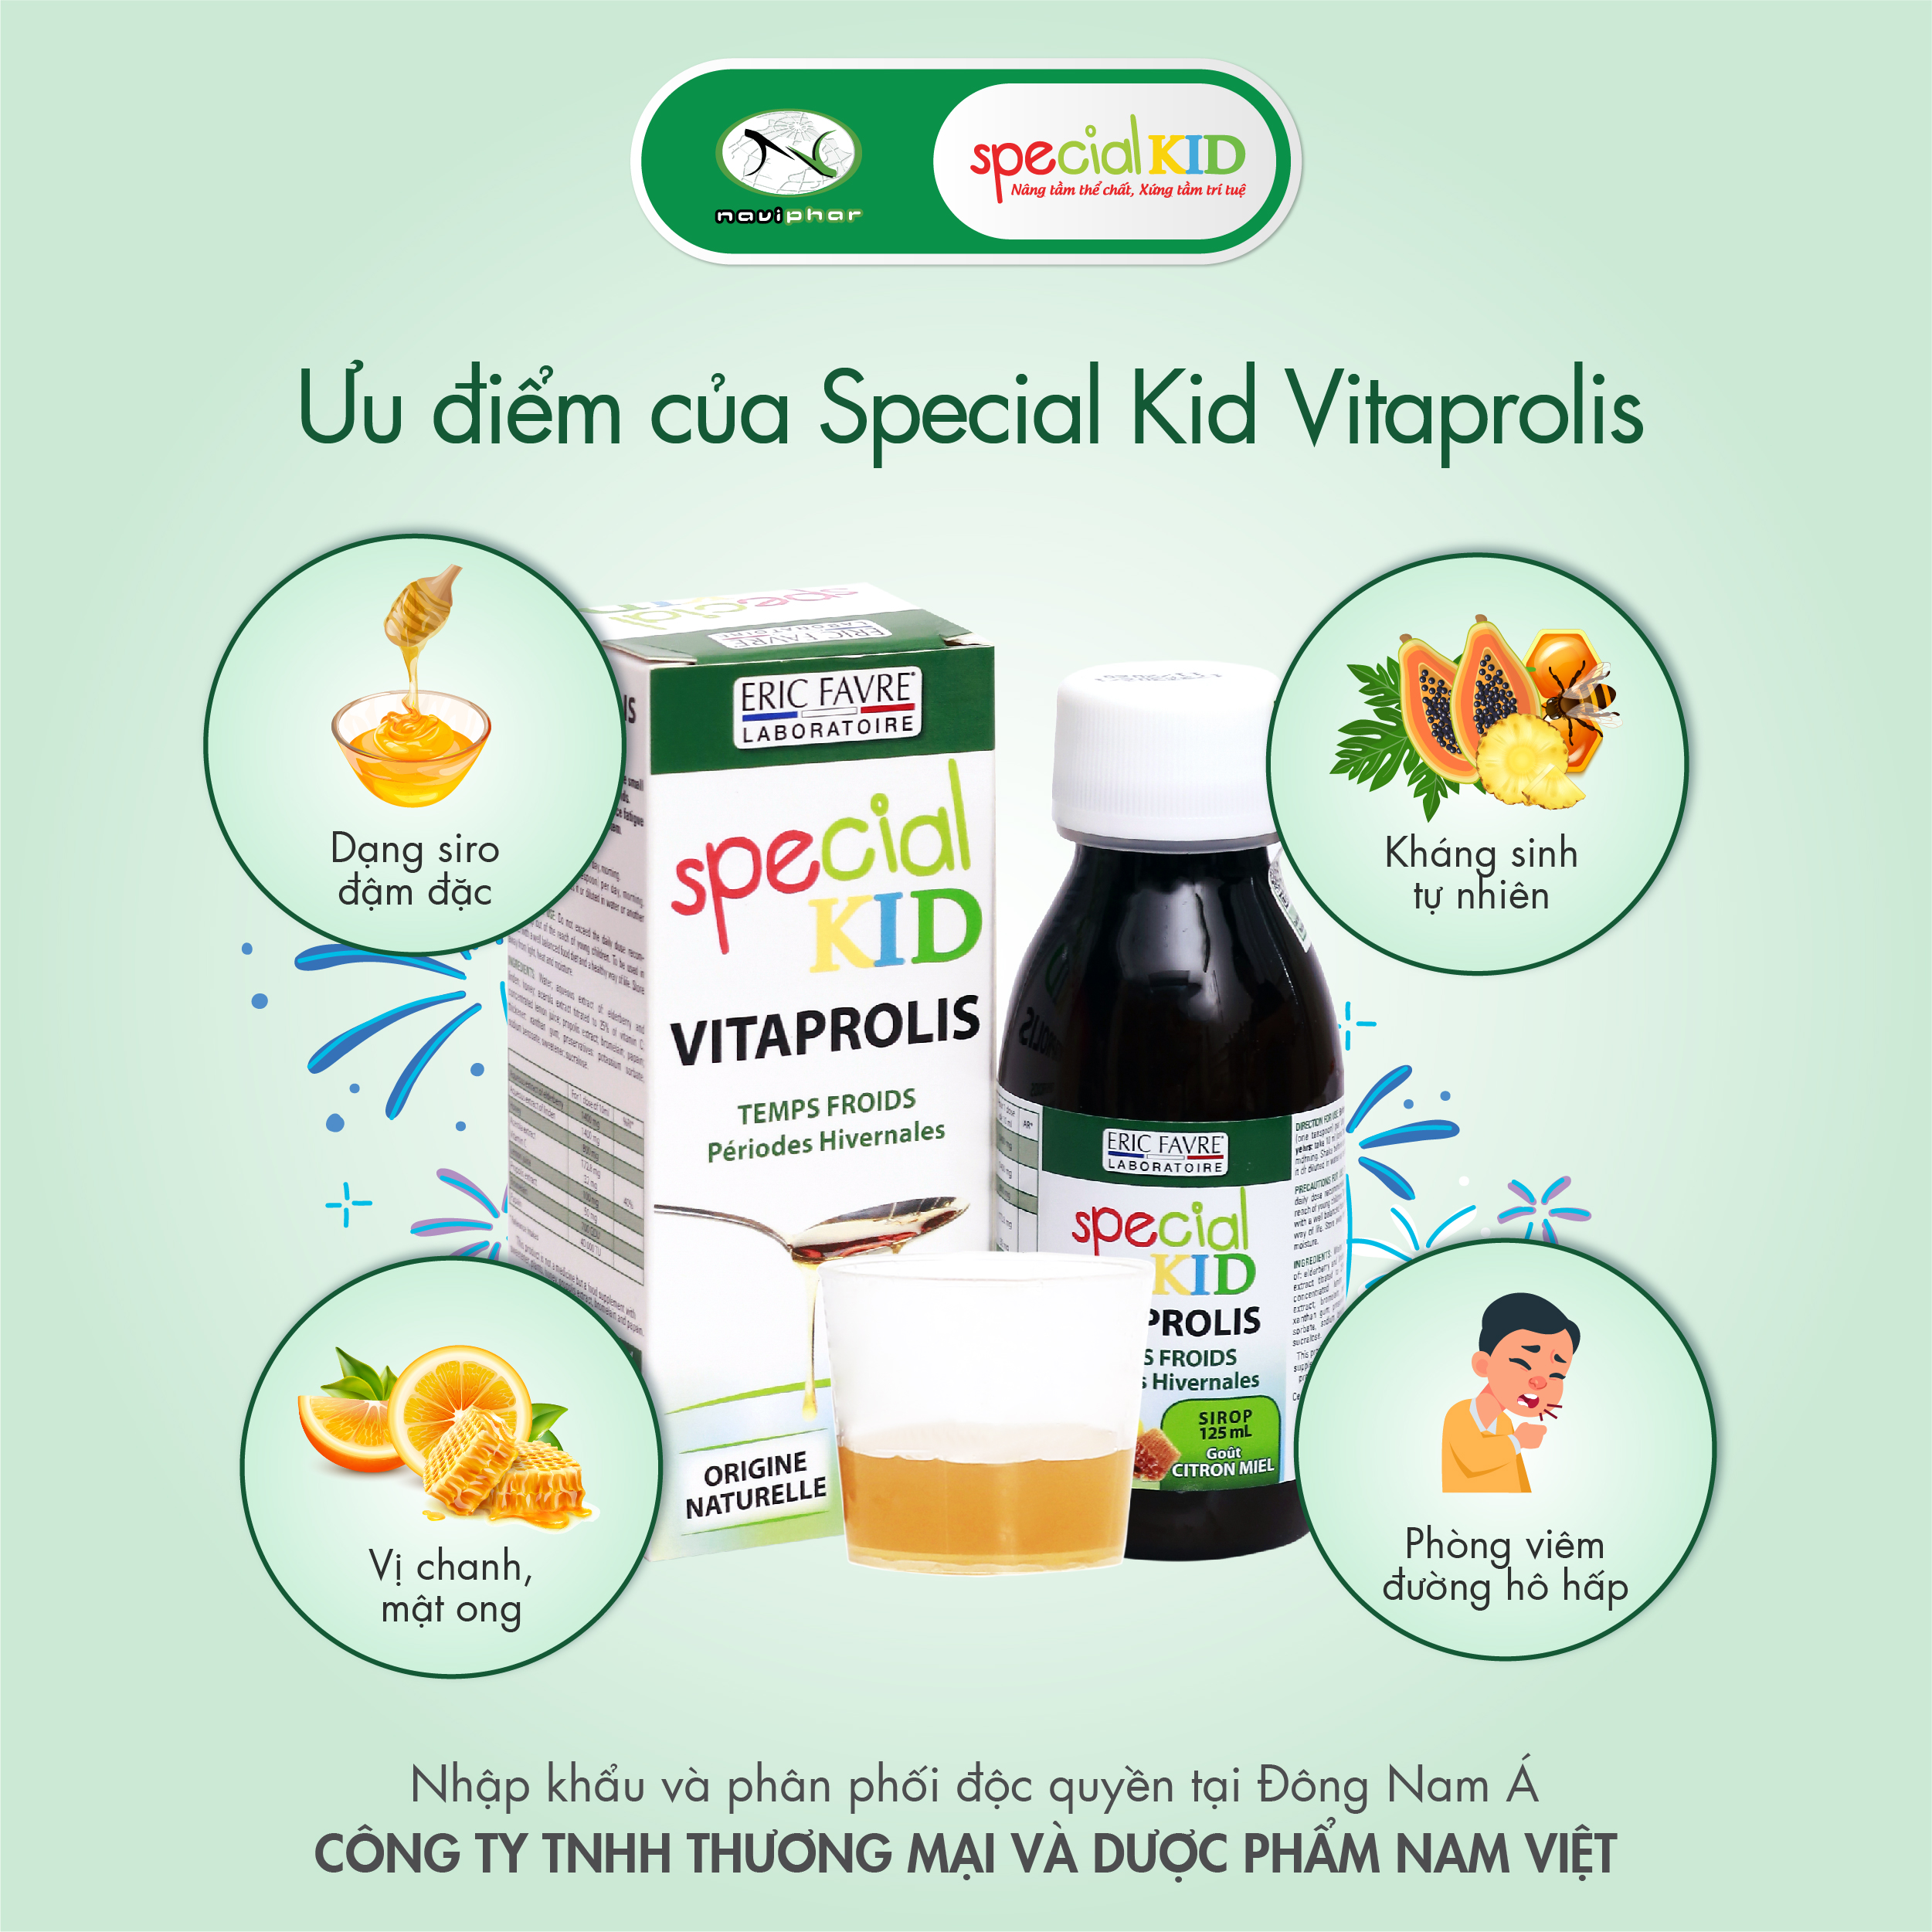 TPBVSK Special Kid Vitaprolis - Hỗ trợ giảm nguy cơ viêm đường hô hấp trên, hỗ trợ tăng cường sức đề kháng (125ml)[Siro - Nhập khẩu Pháp]